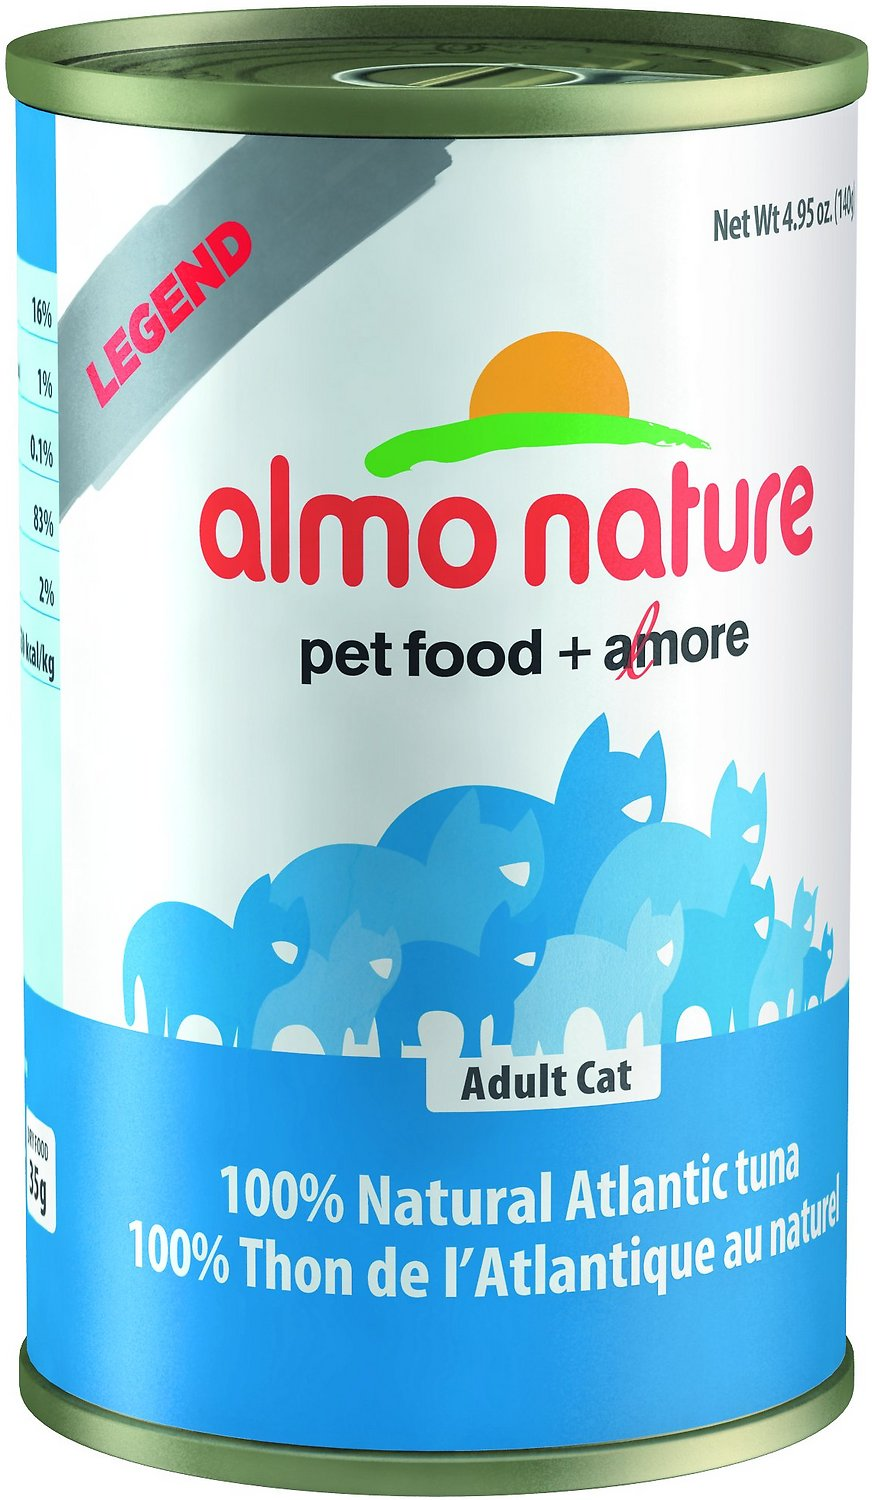 Almo Nature Legend 100% Natural Atlantic Tuna food 4.94oz - Pet LLC